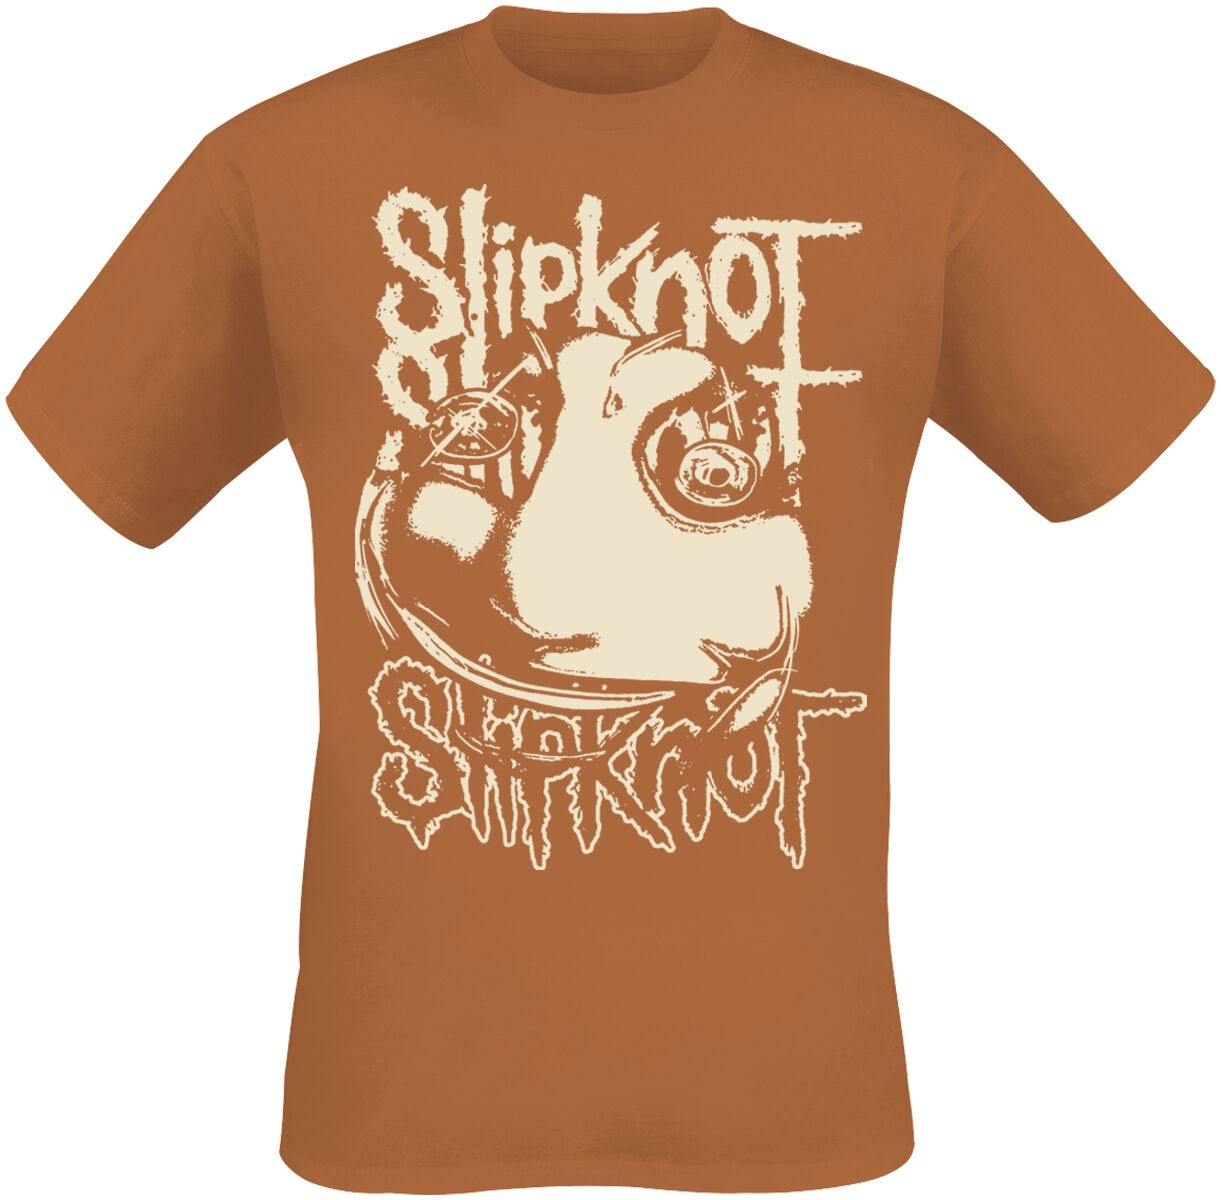 Slipknot T-Shirt - Adderall Maggot - S bis M - für Männer - Größe S - orange  - Lizenziertes Merchandise!